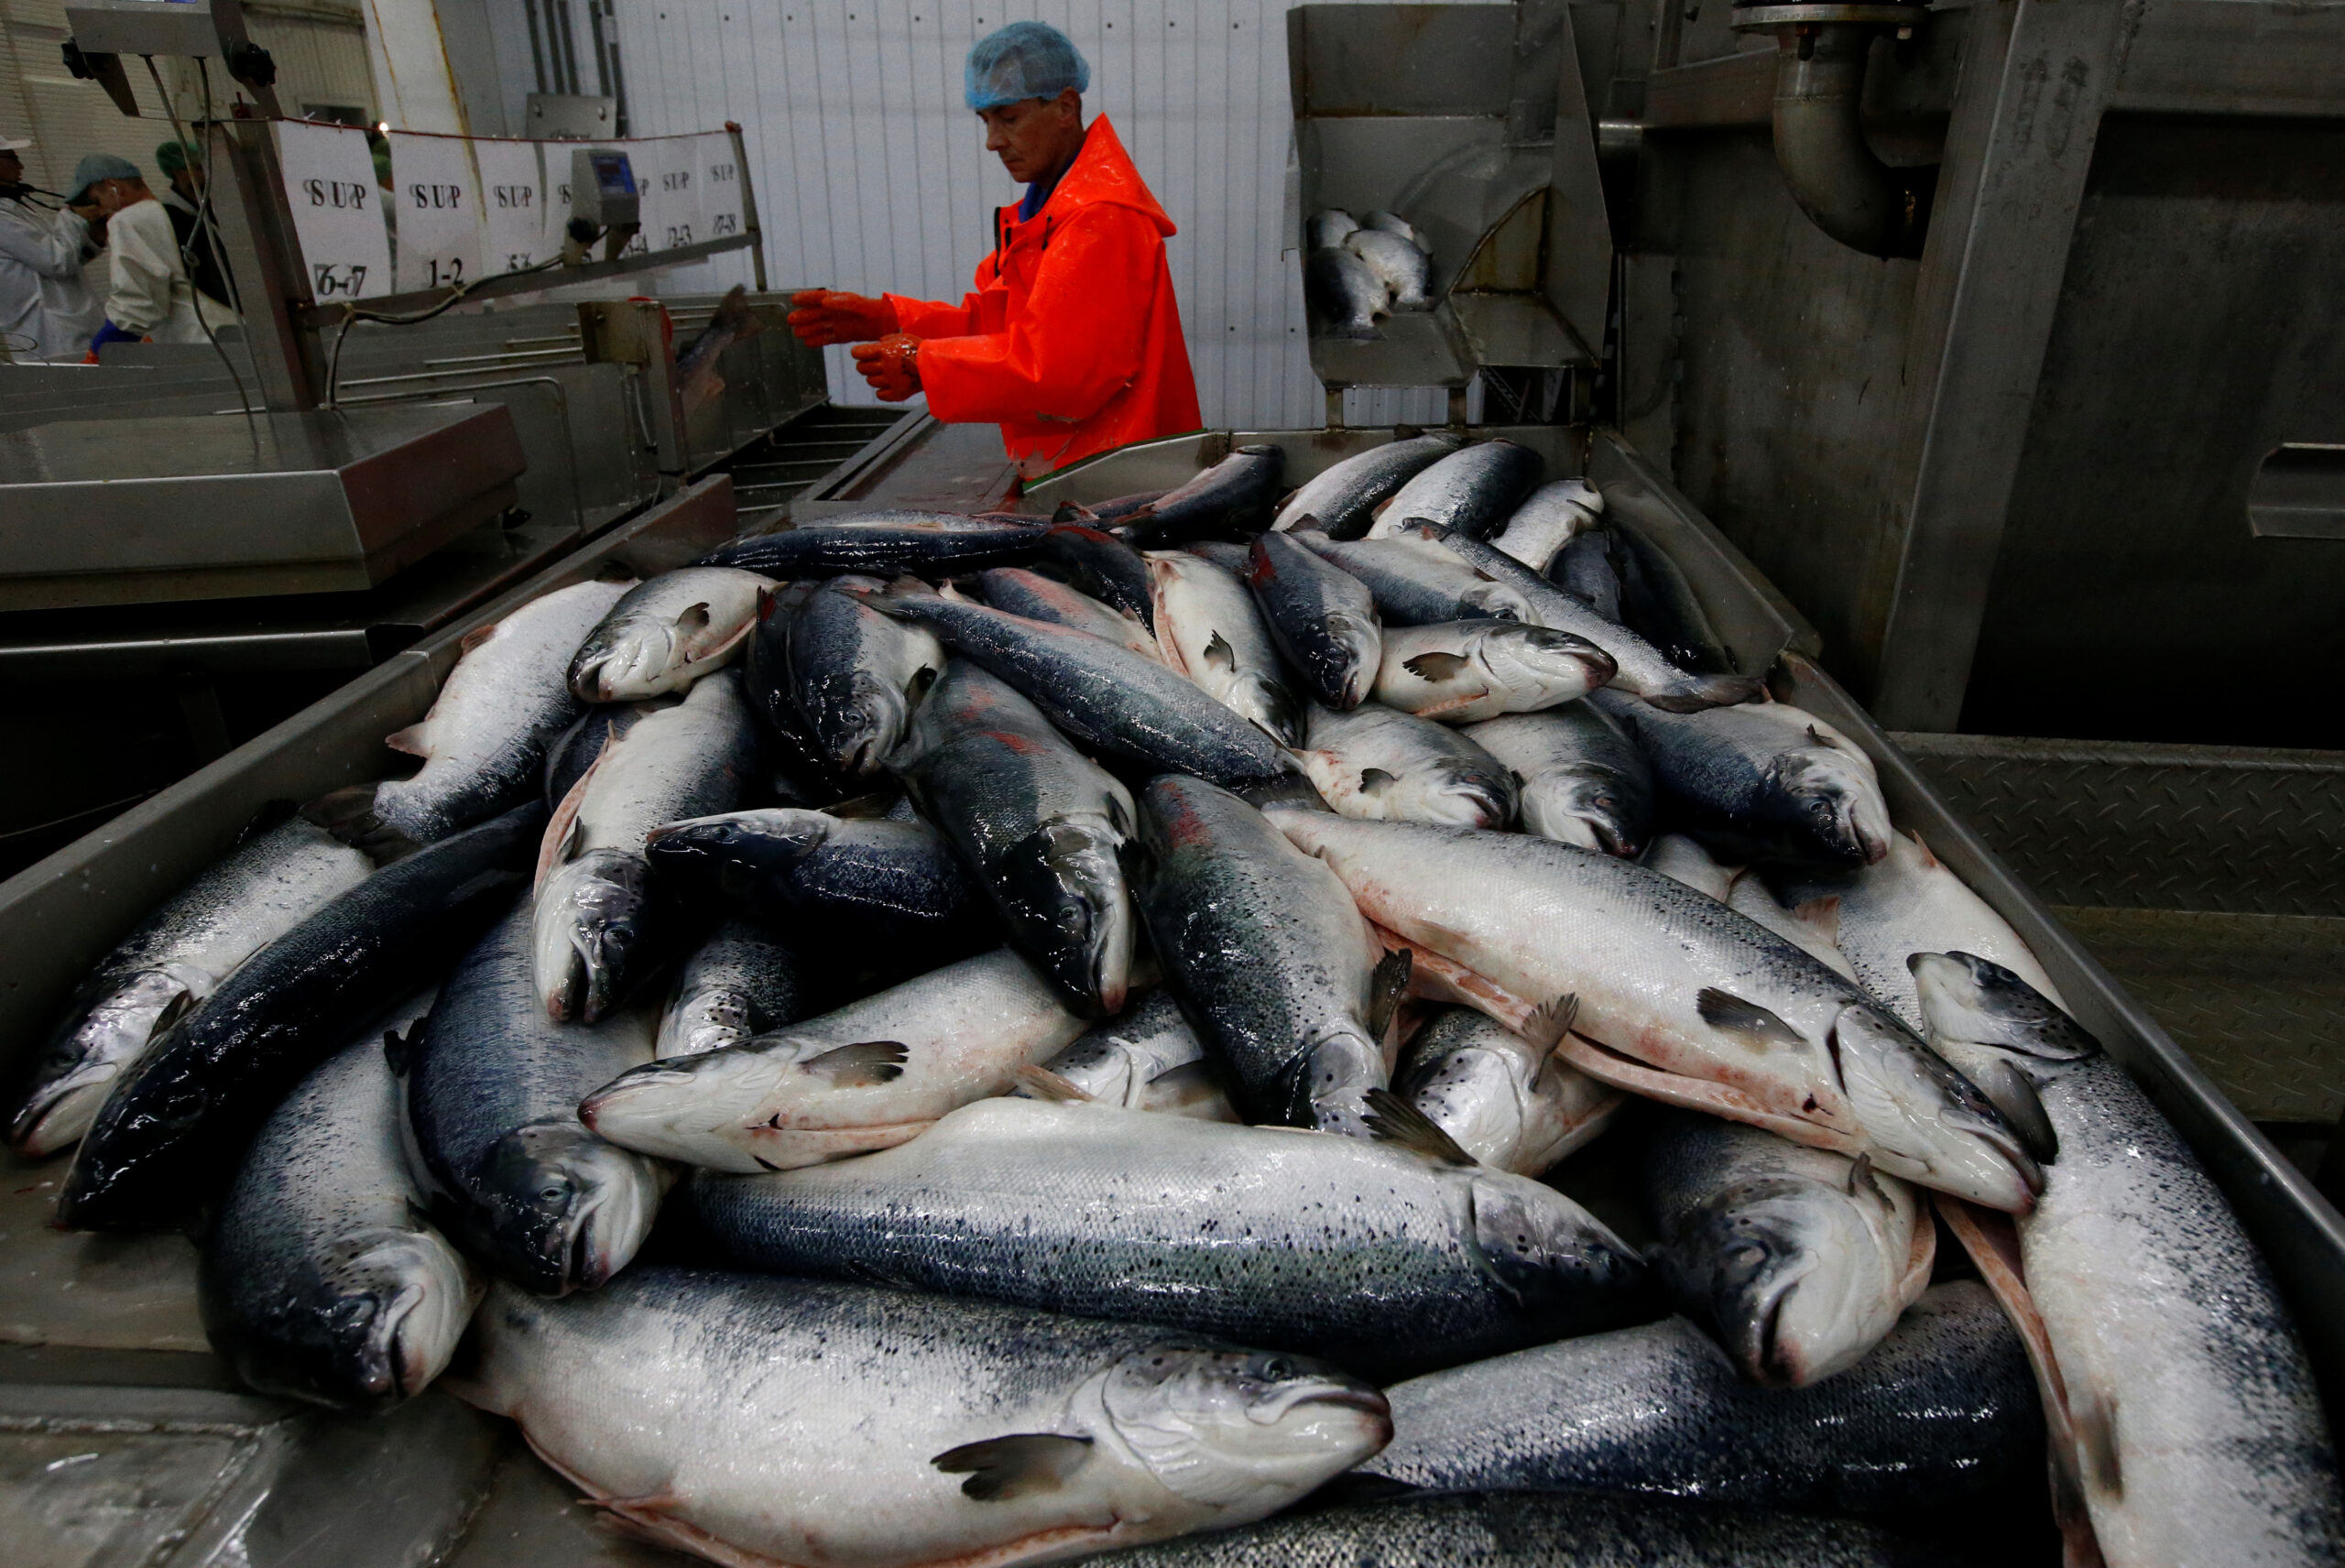 Рабочие сортируют рыбу, привезенную с рыбного хозяйства в Баренцевом море, на перерабатывающем предприятии в Мурманске. Фото SERGEI KARPUKHIN / TASS / Scanpix / Leta